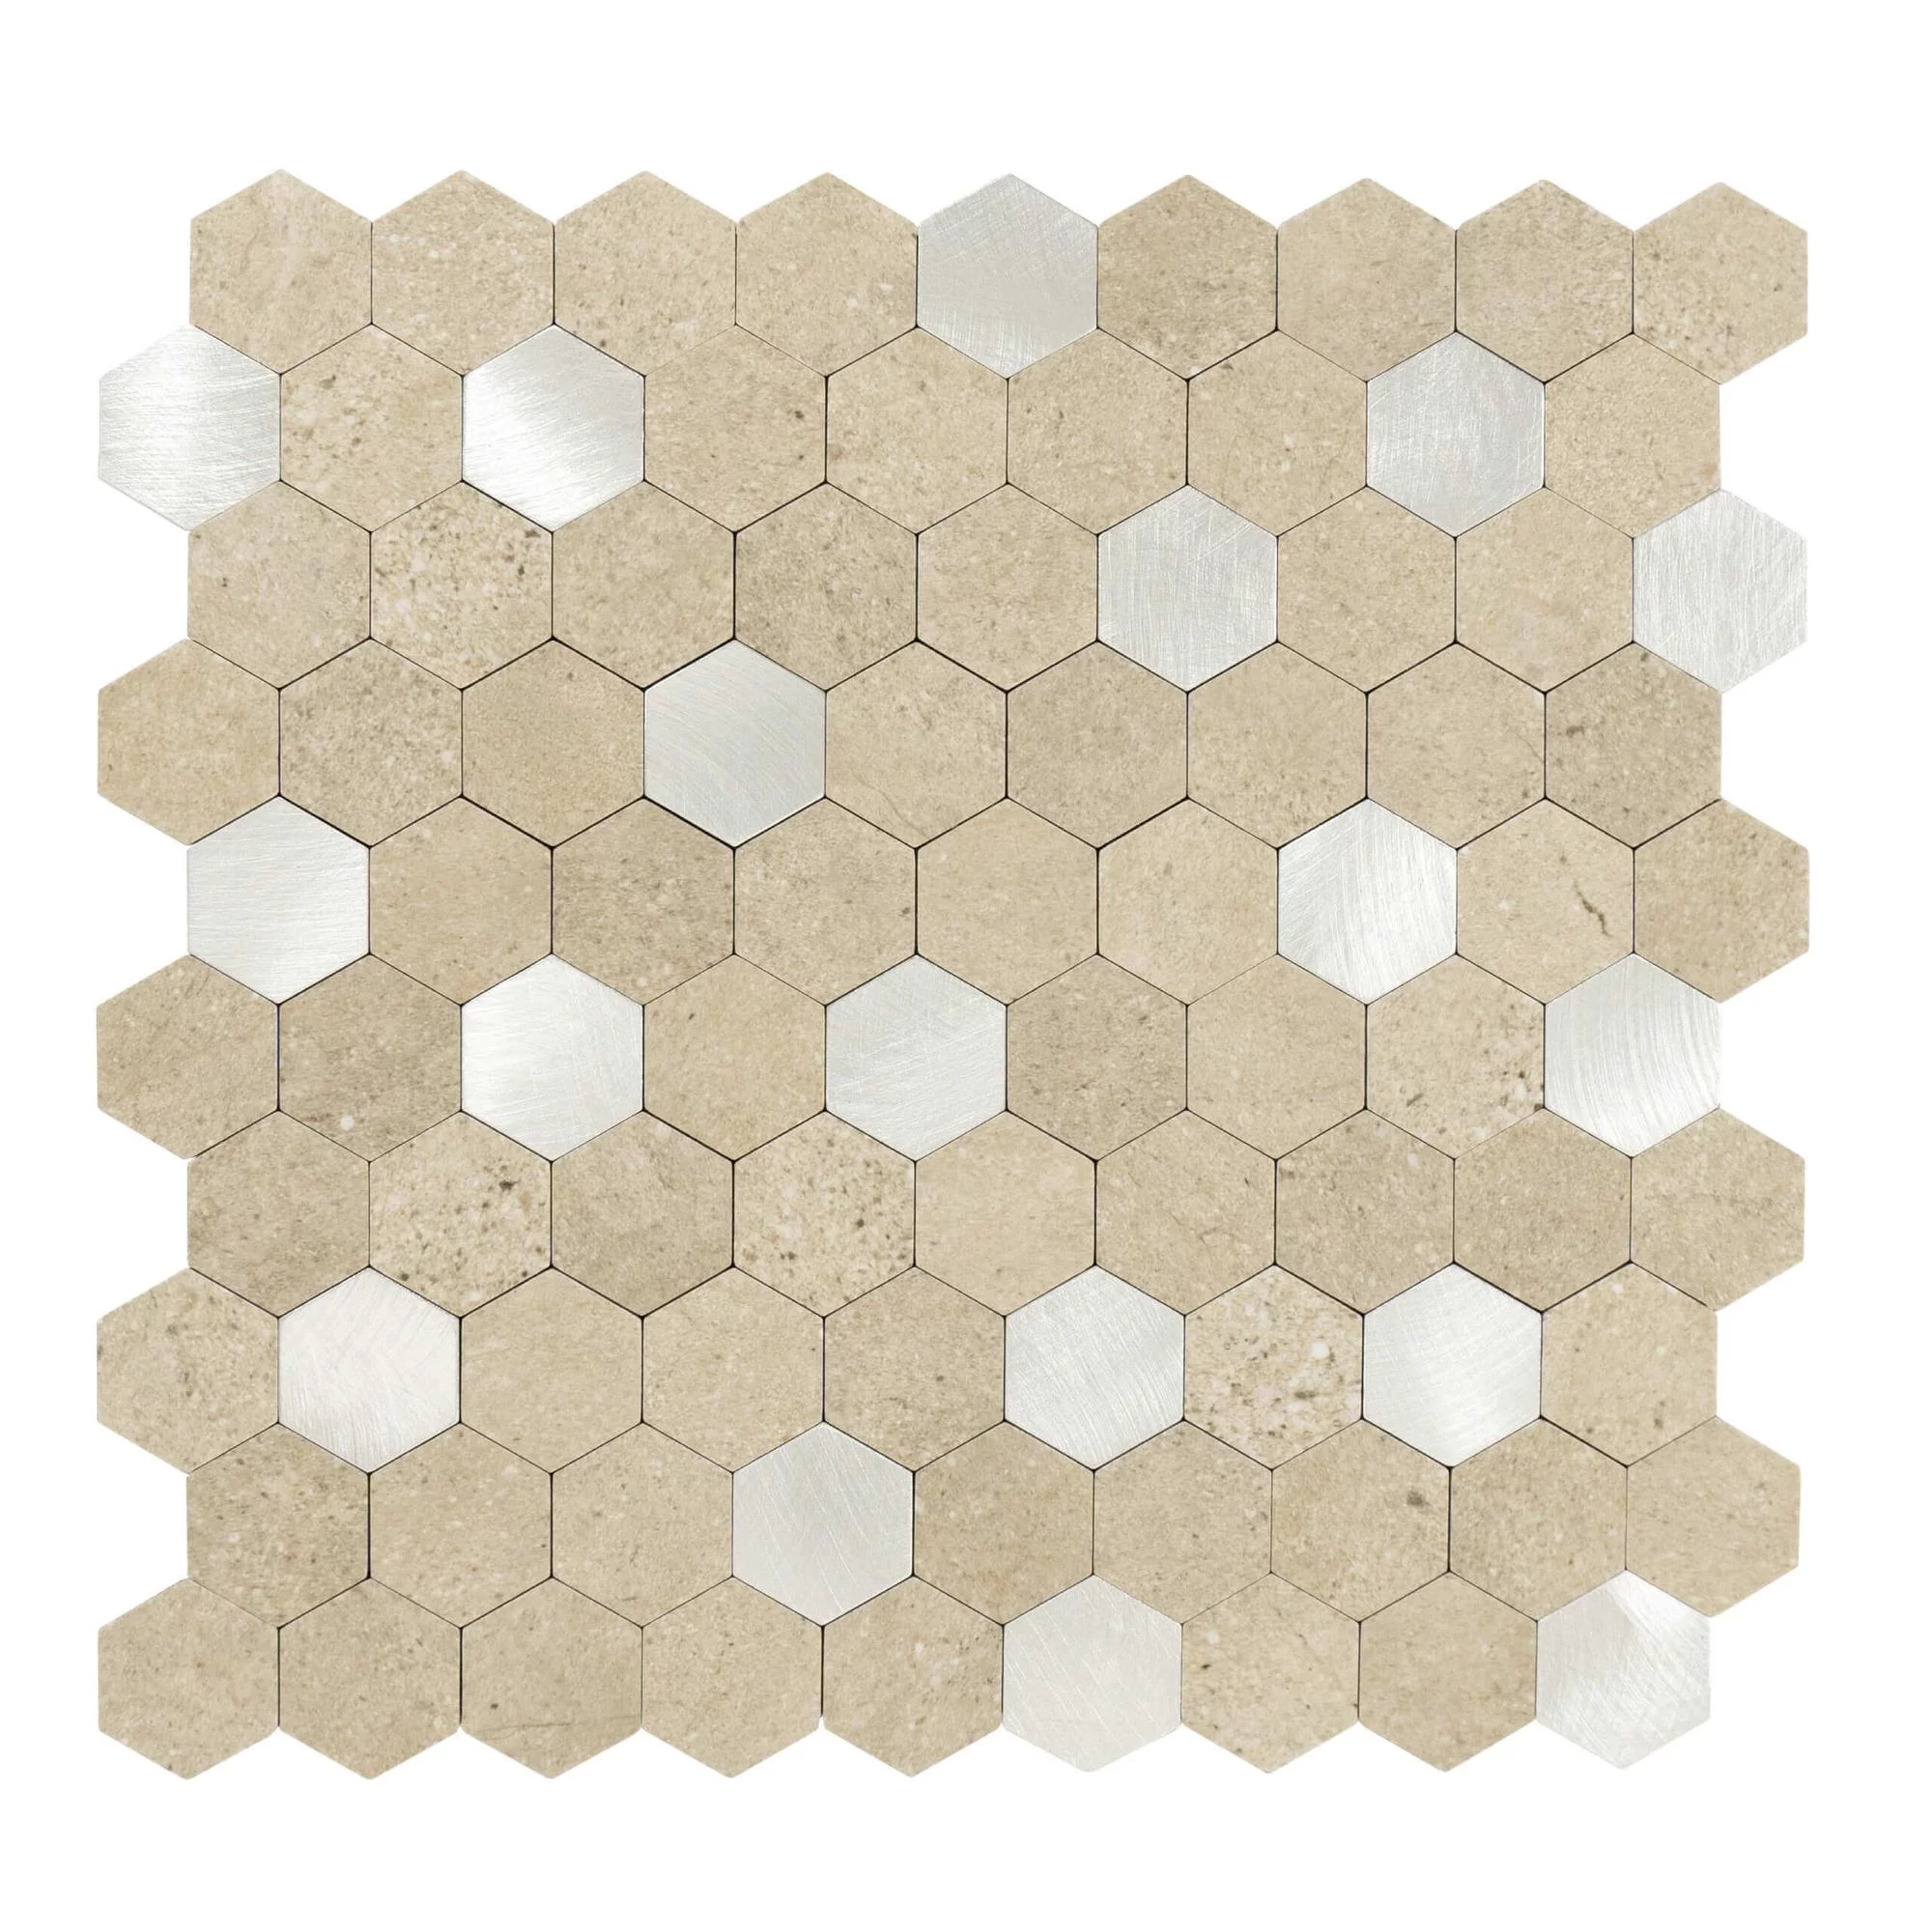 Zelfklevende tegels zeshoekige vorm